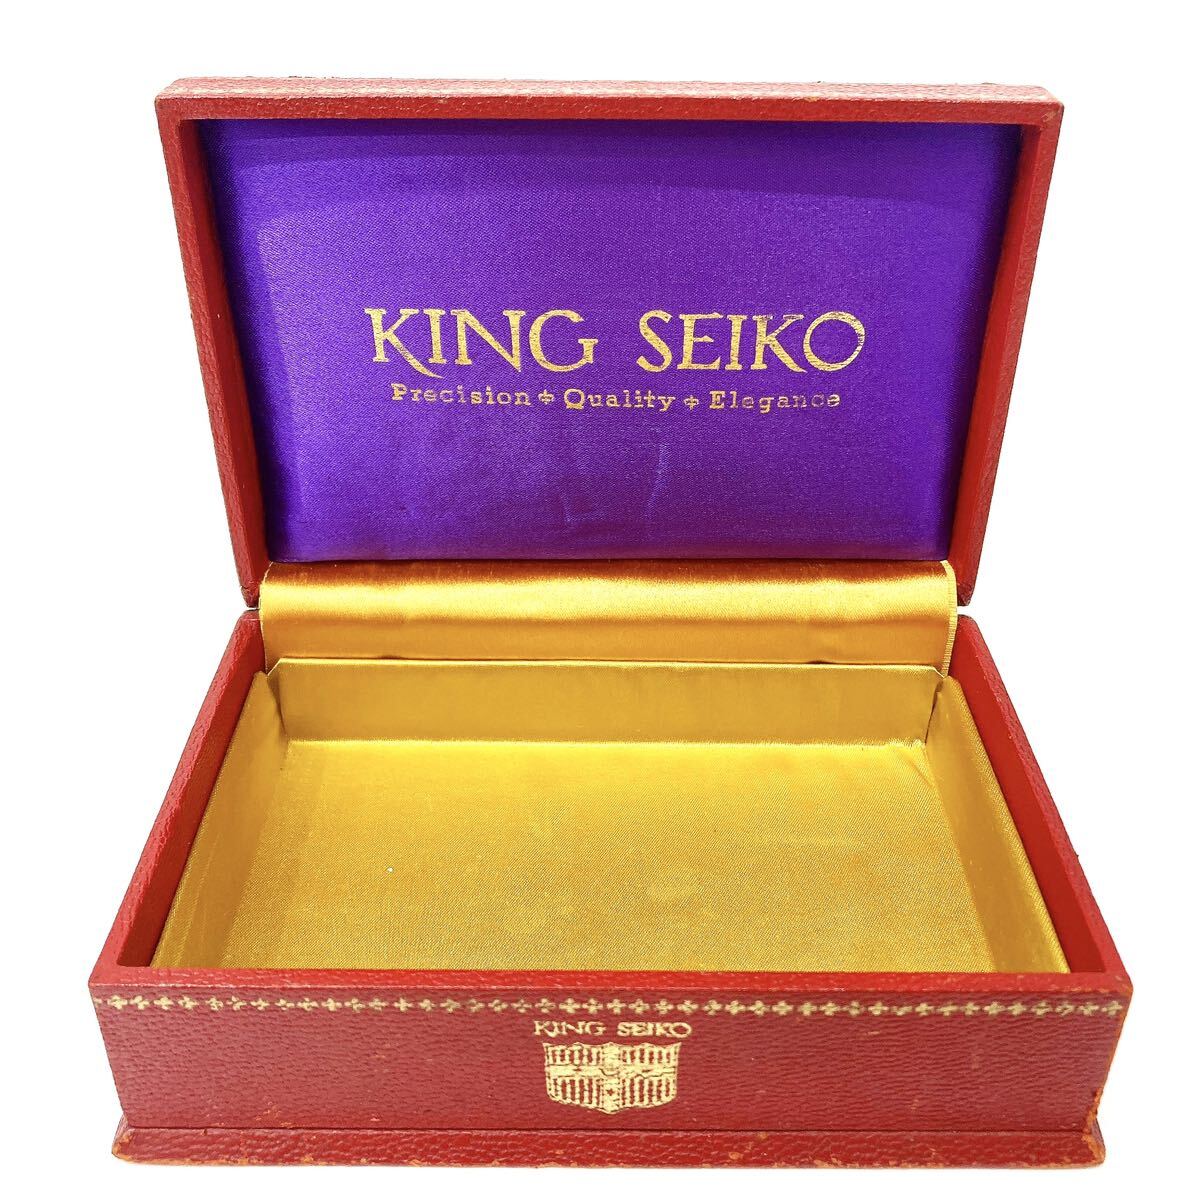 KING SEIKO キングセイコー 空箱 箱のみ 当時物 レトロ 2個 alp岩0222_画像2